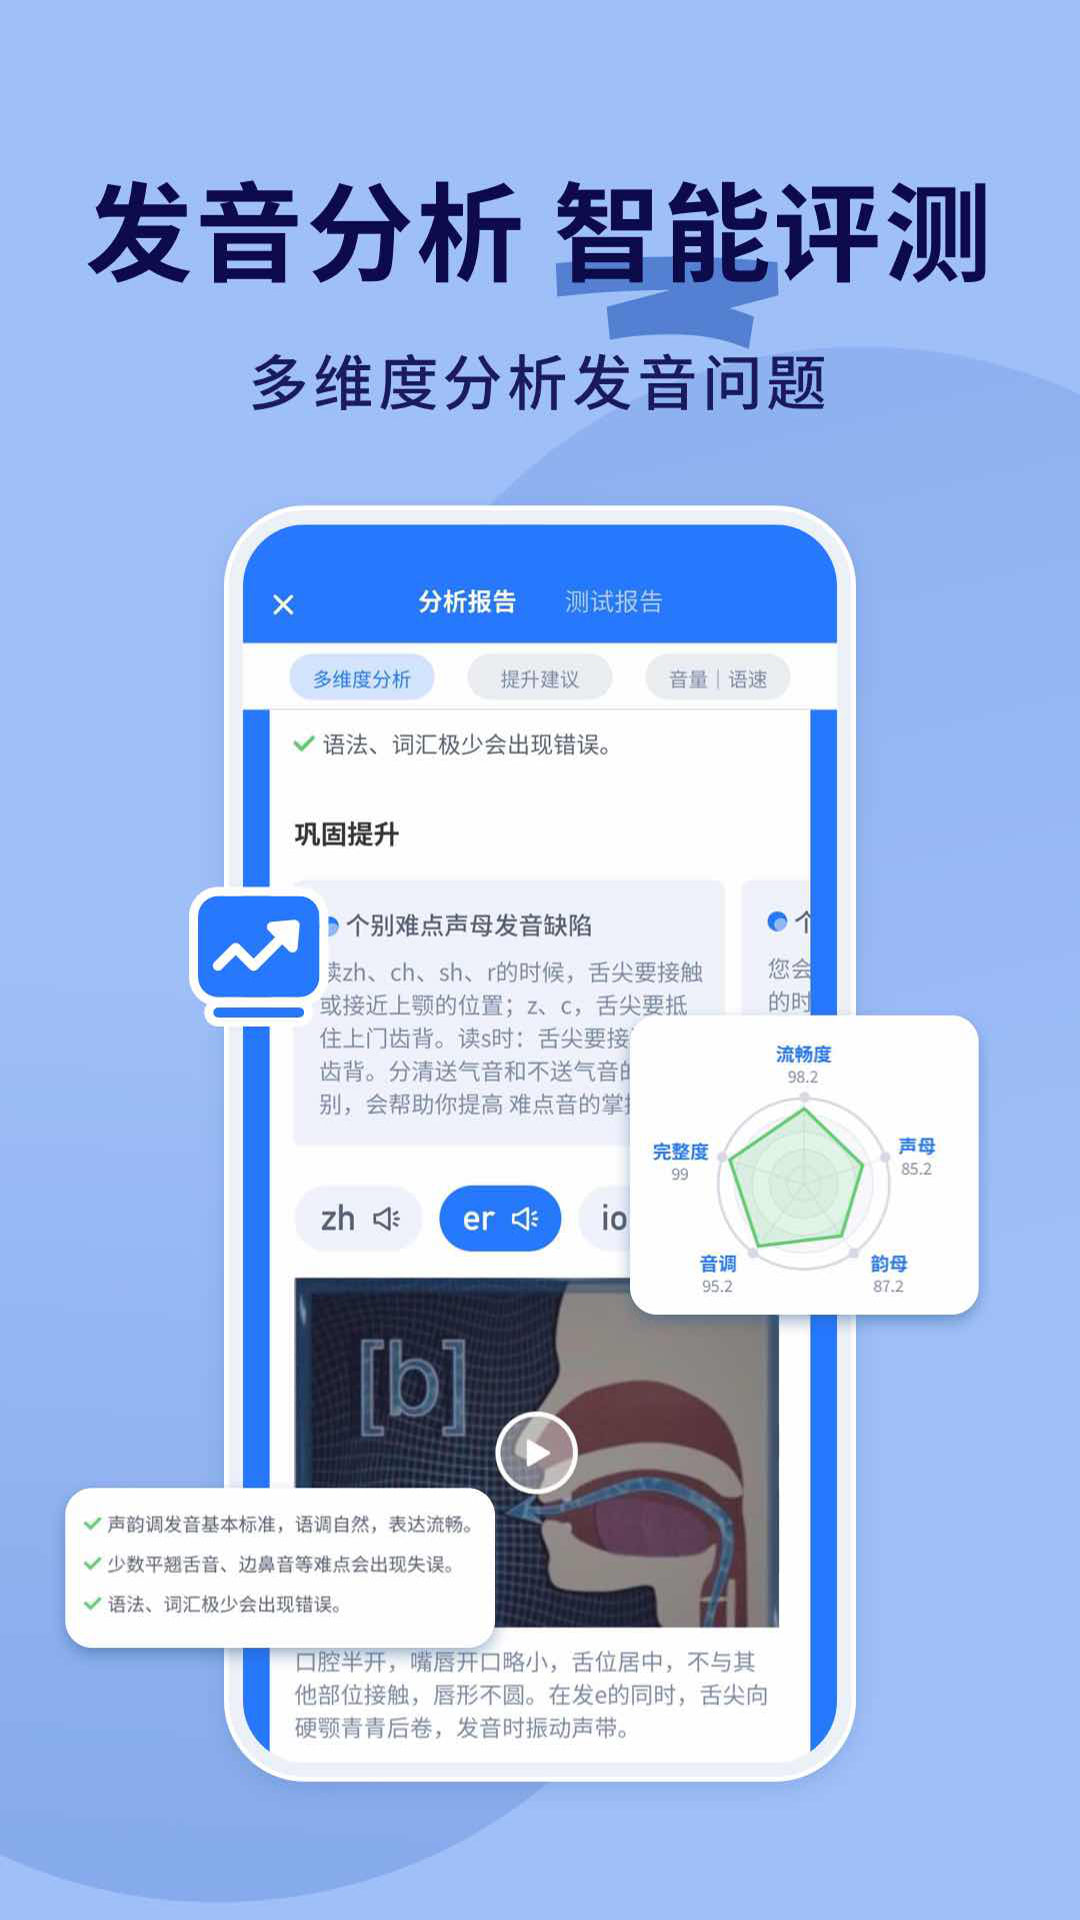 普通话不普通学习app安卓版 v1.0.0截图